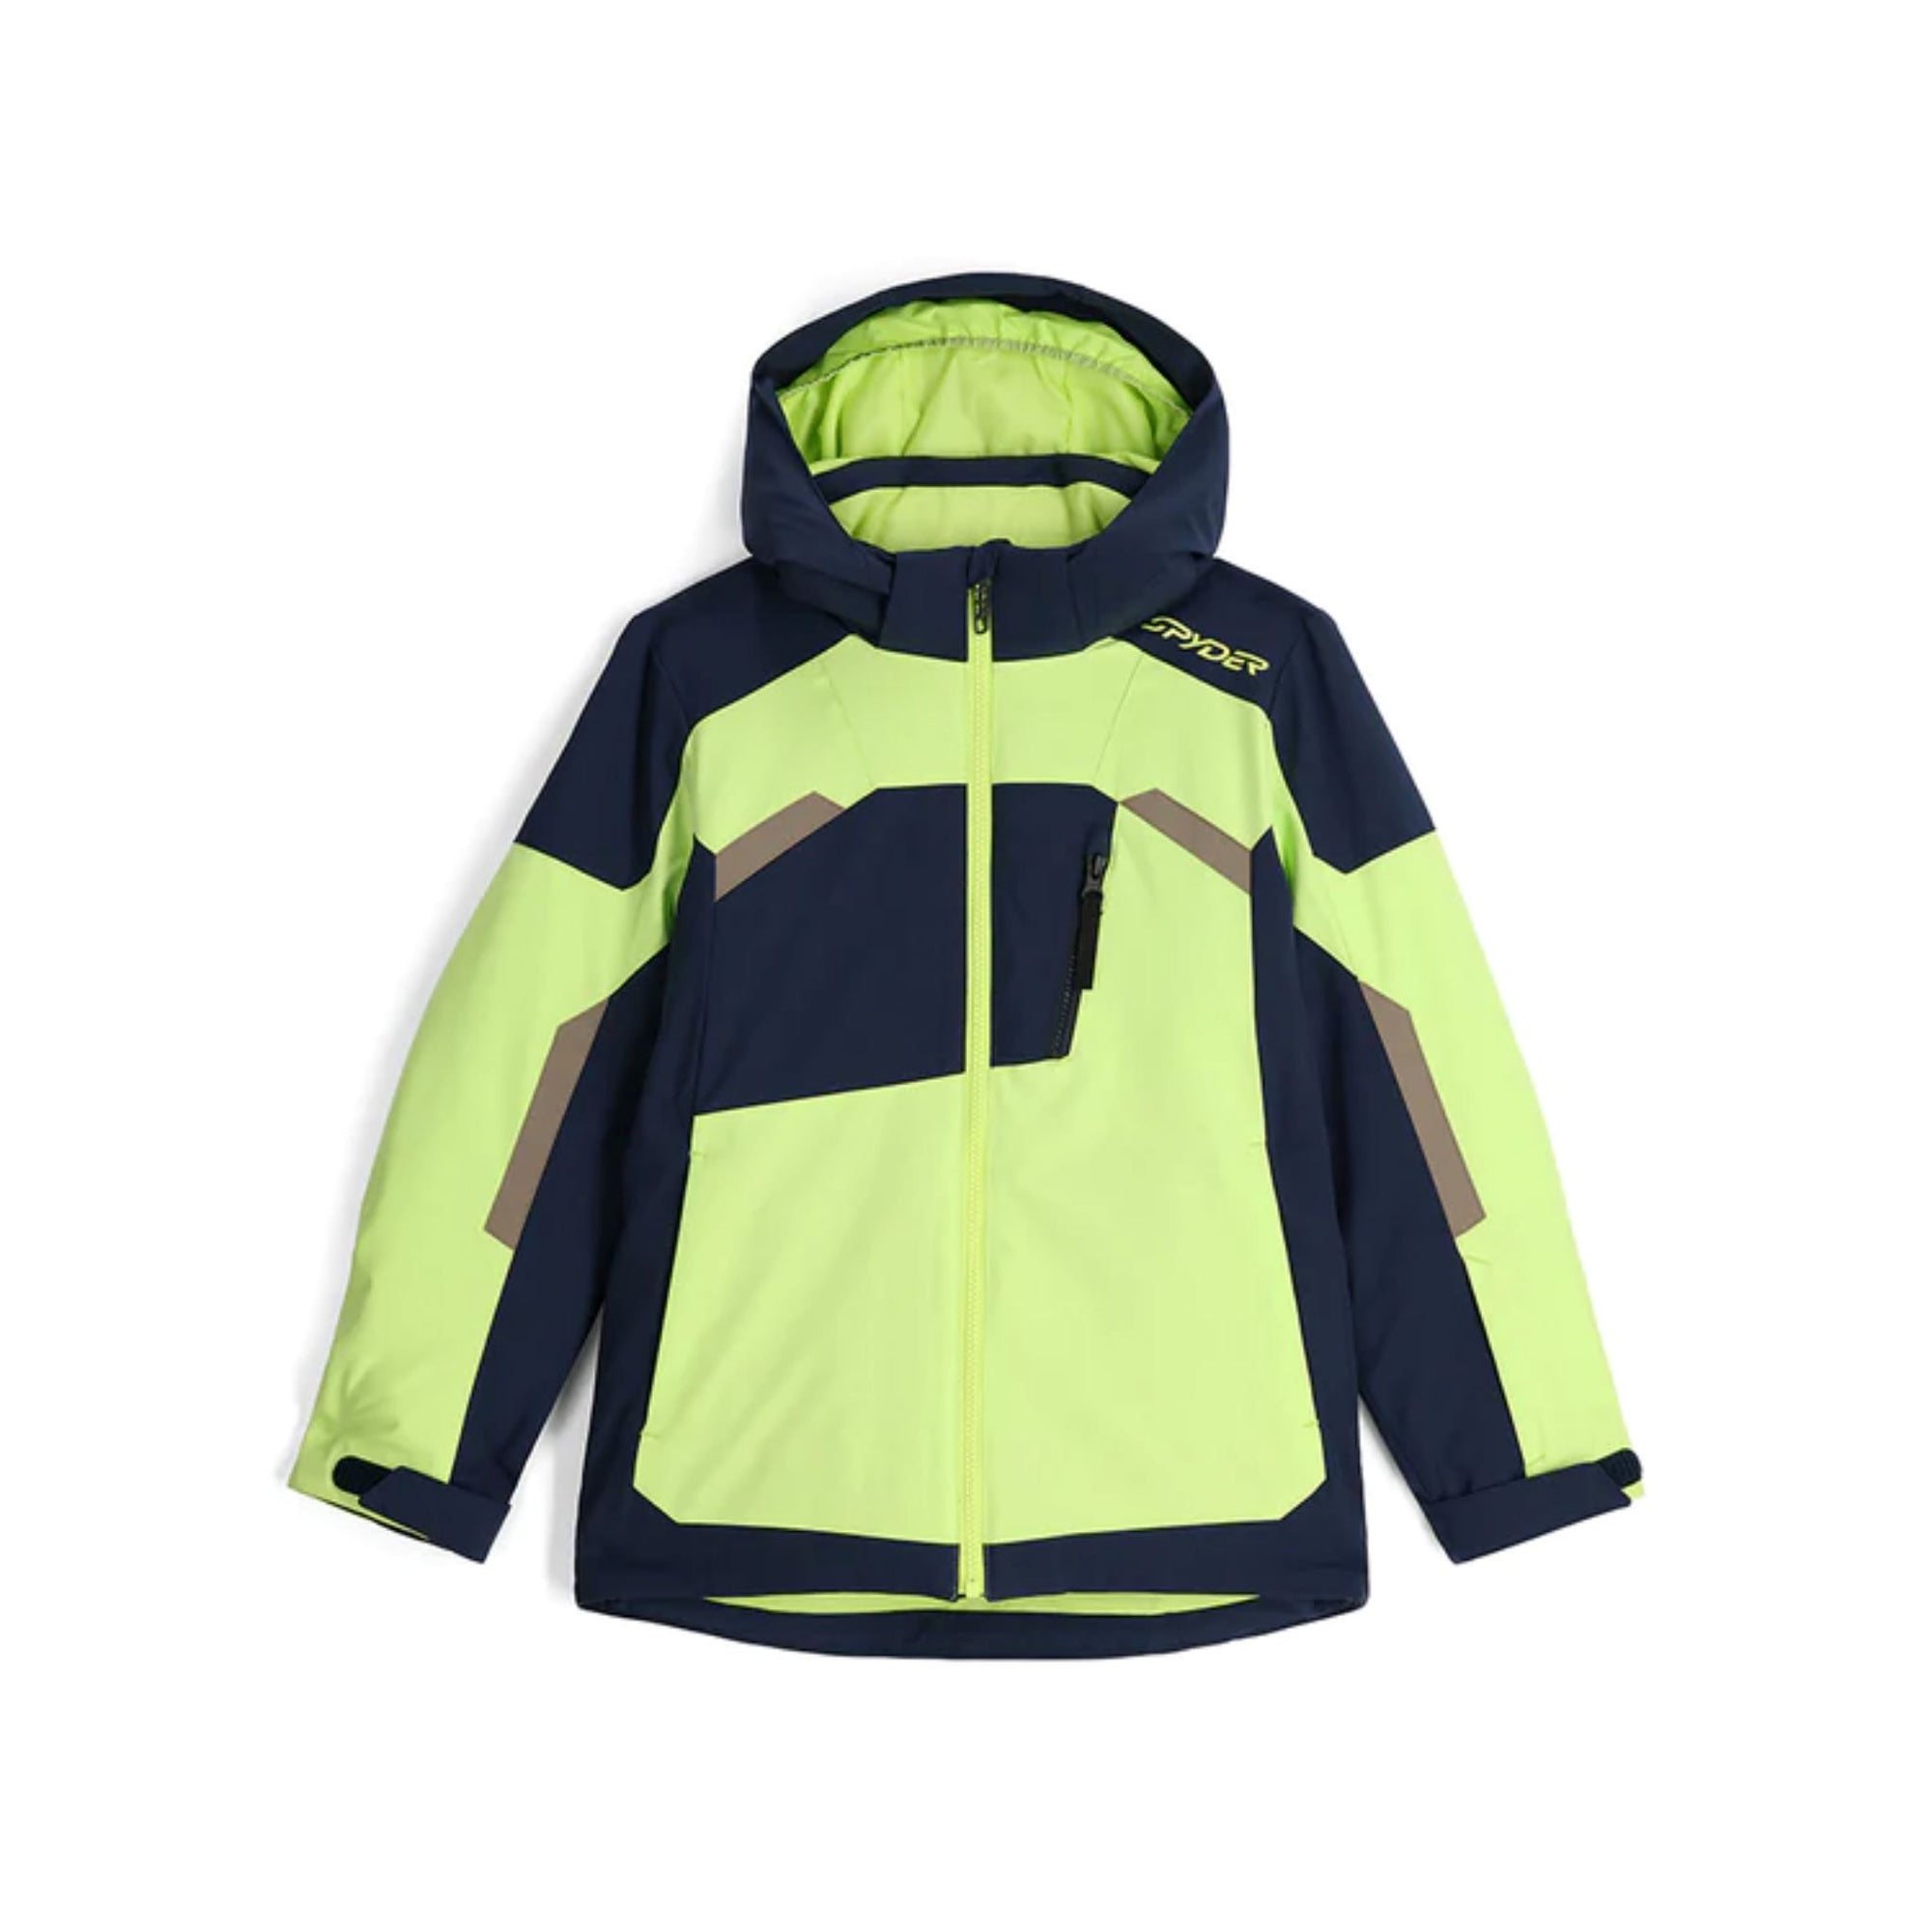 Kids Spyder Leader Jacket - Lime Ice Jackets Spyder 8 INTL / 8 AU 